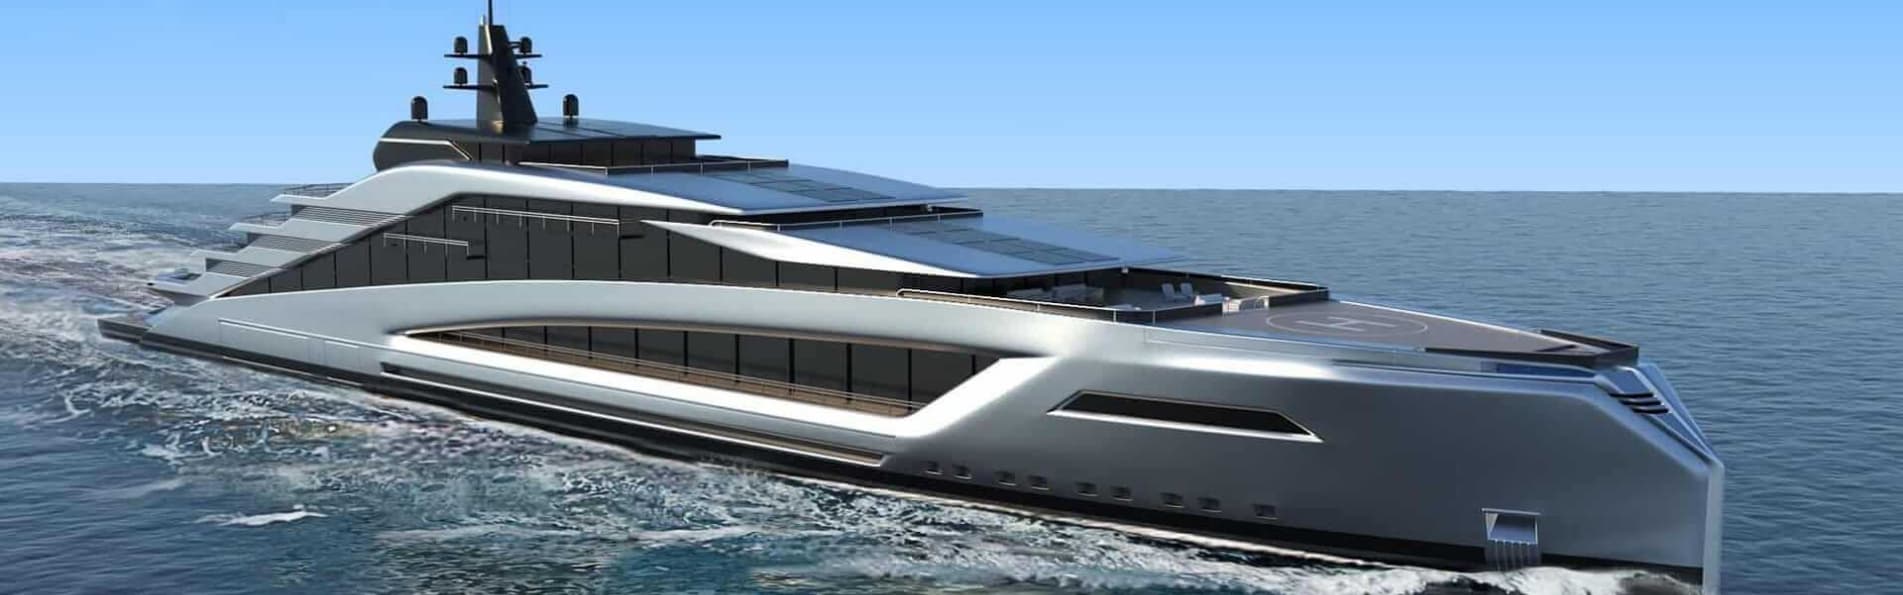 Yacht Interior Design Firm